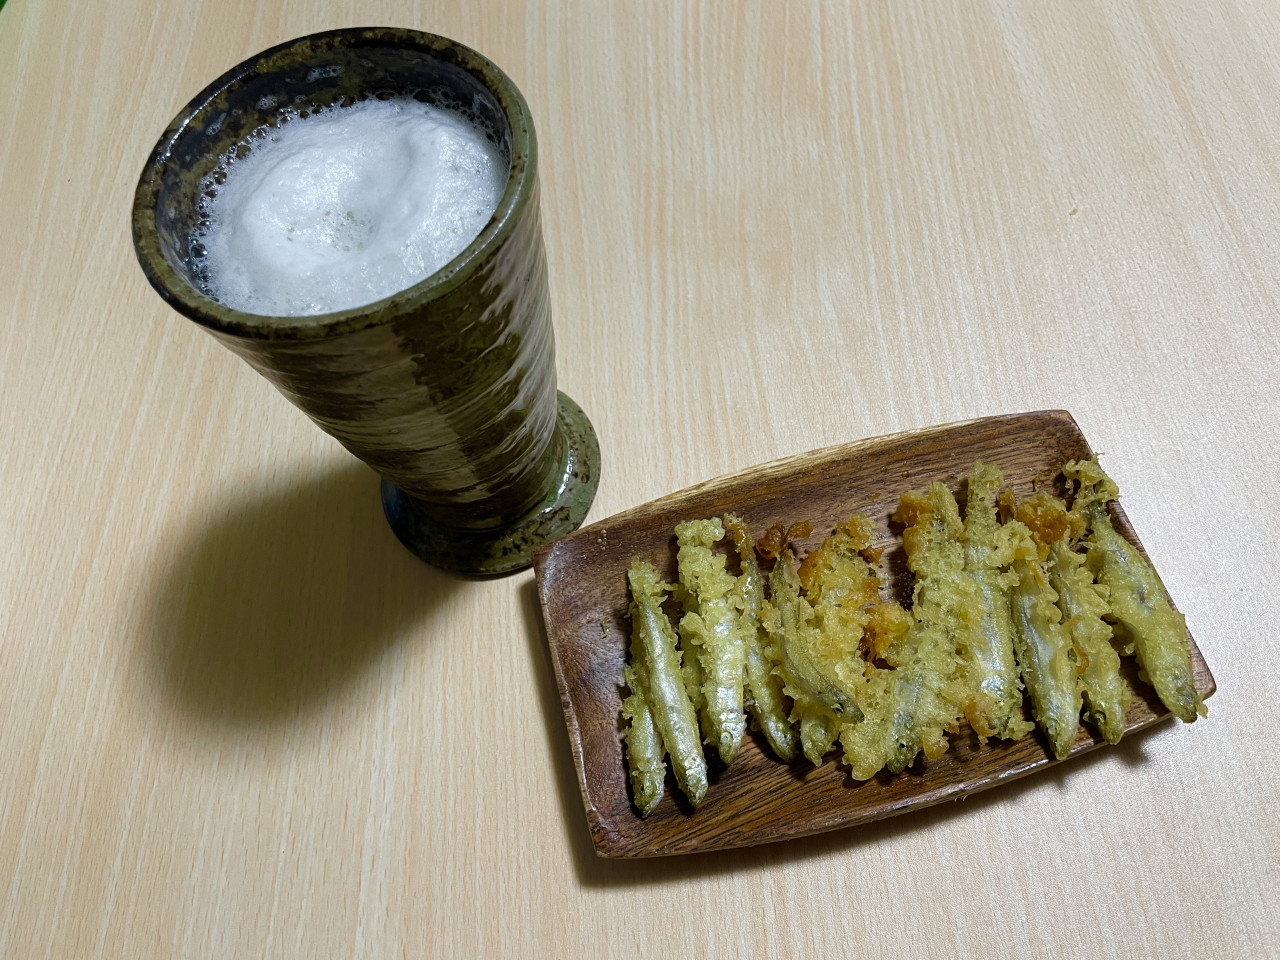 ビールと天ぷら